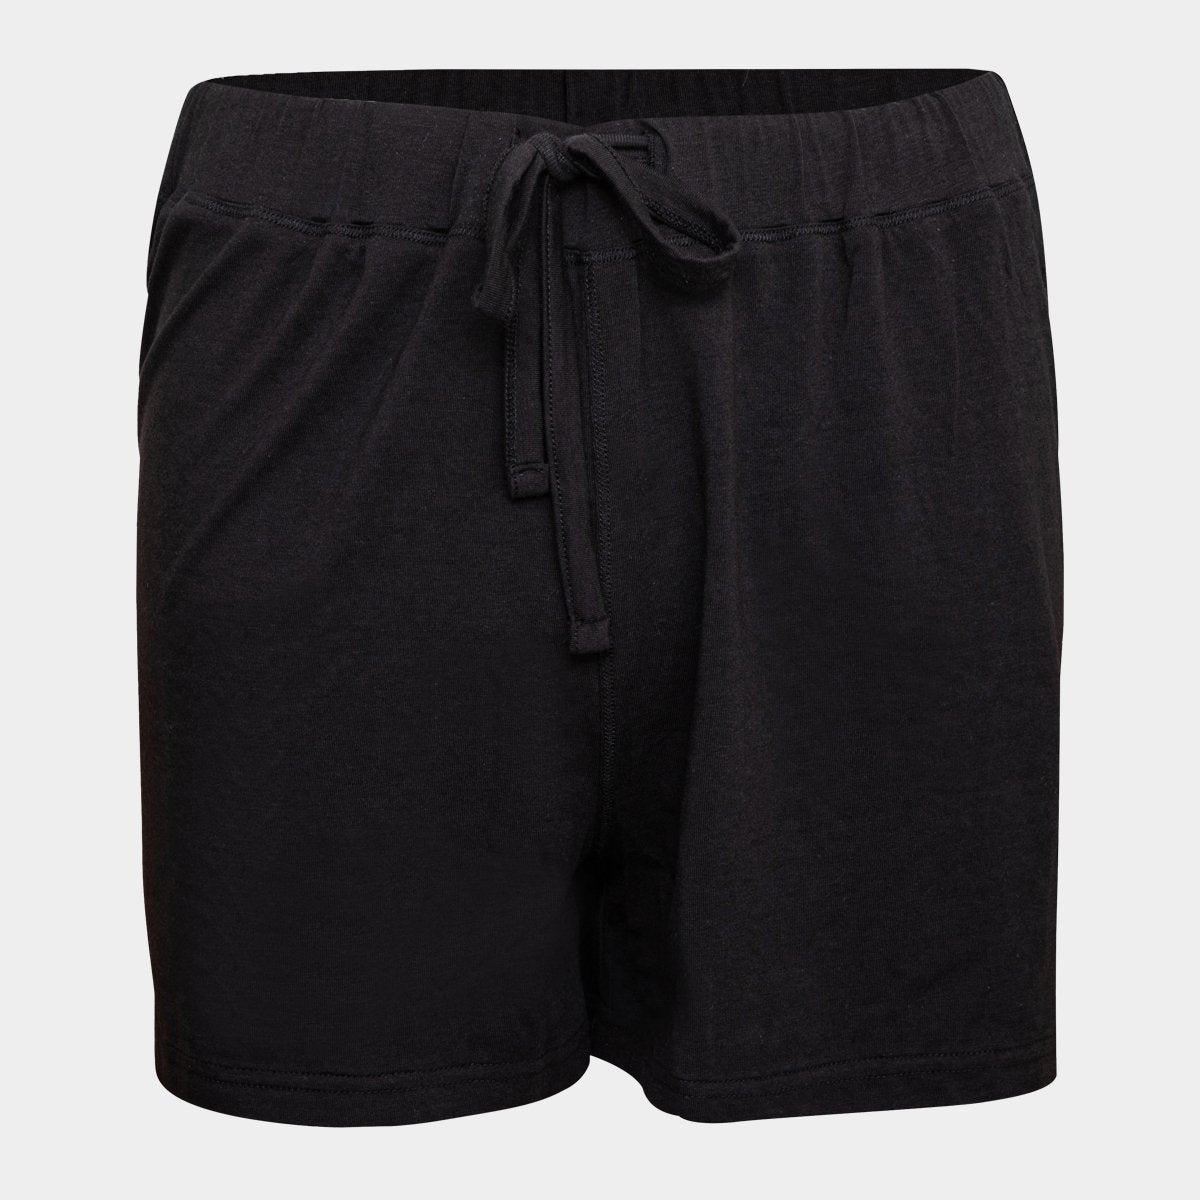 Sorte bambus shorts til dame fra JBS of Denmark, L